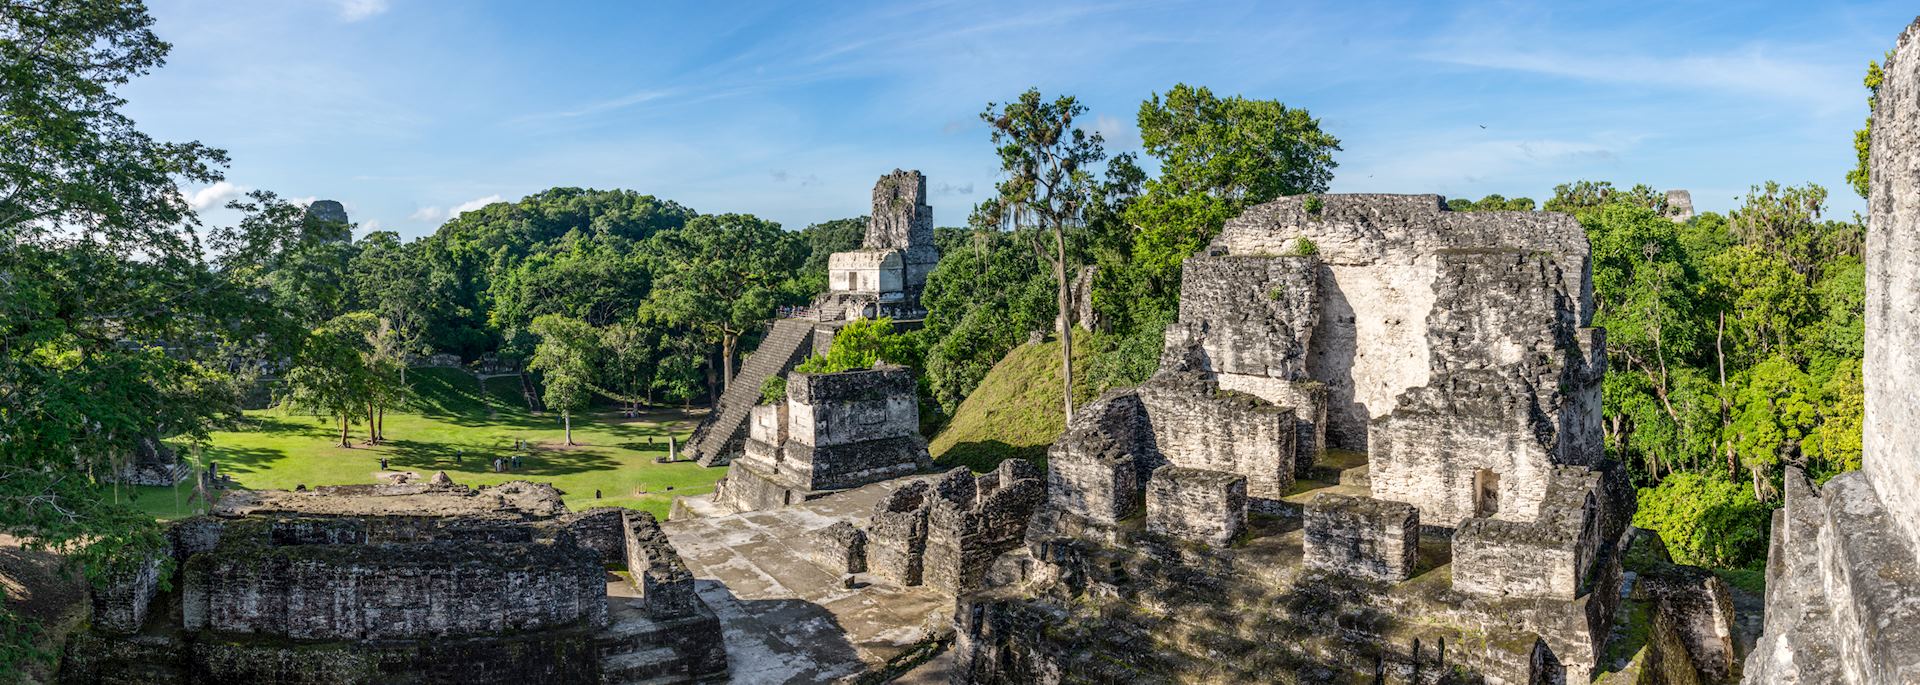 Maya ruins at Tikal